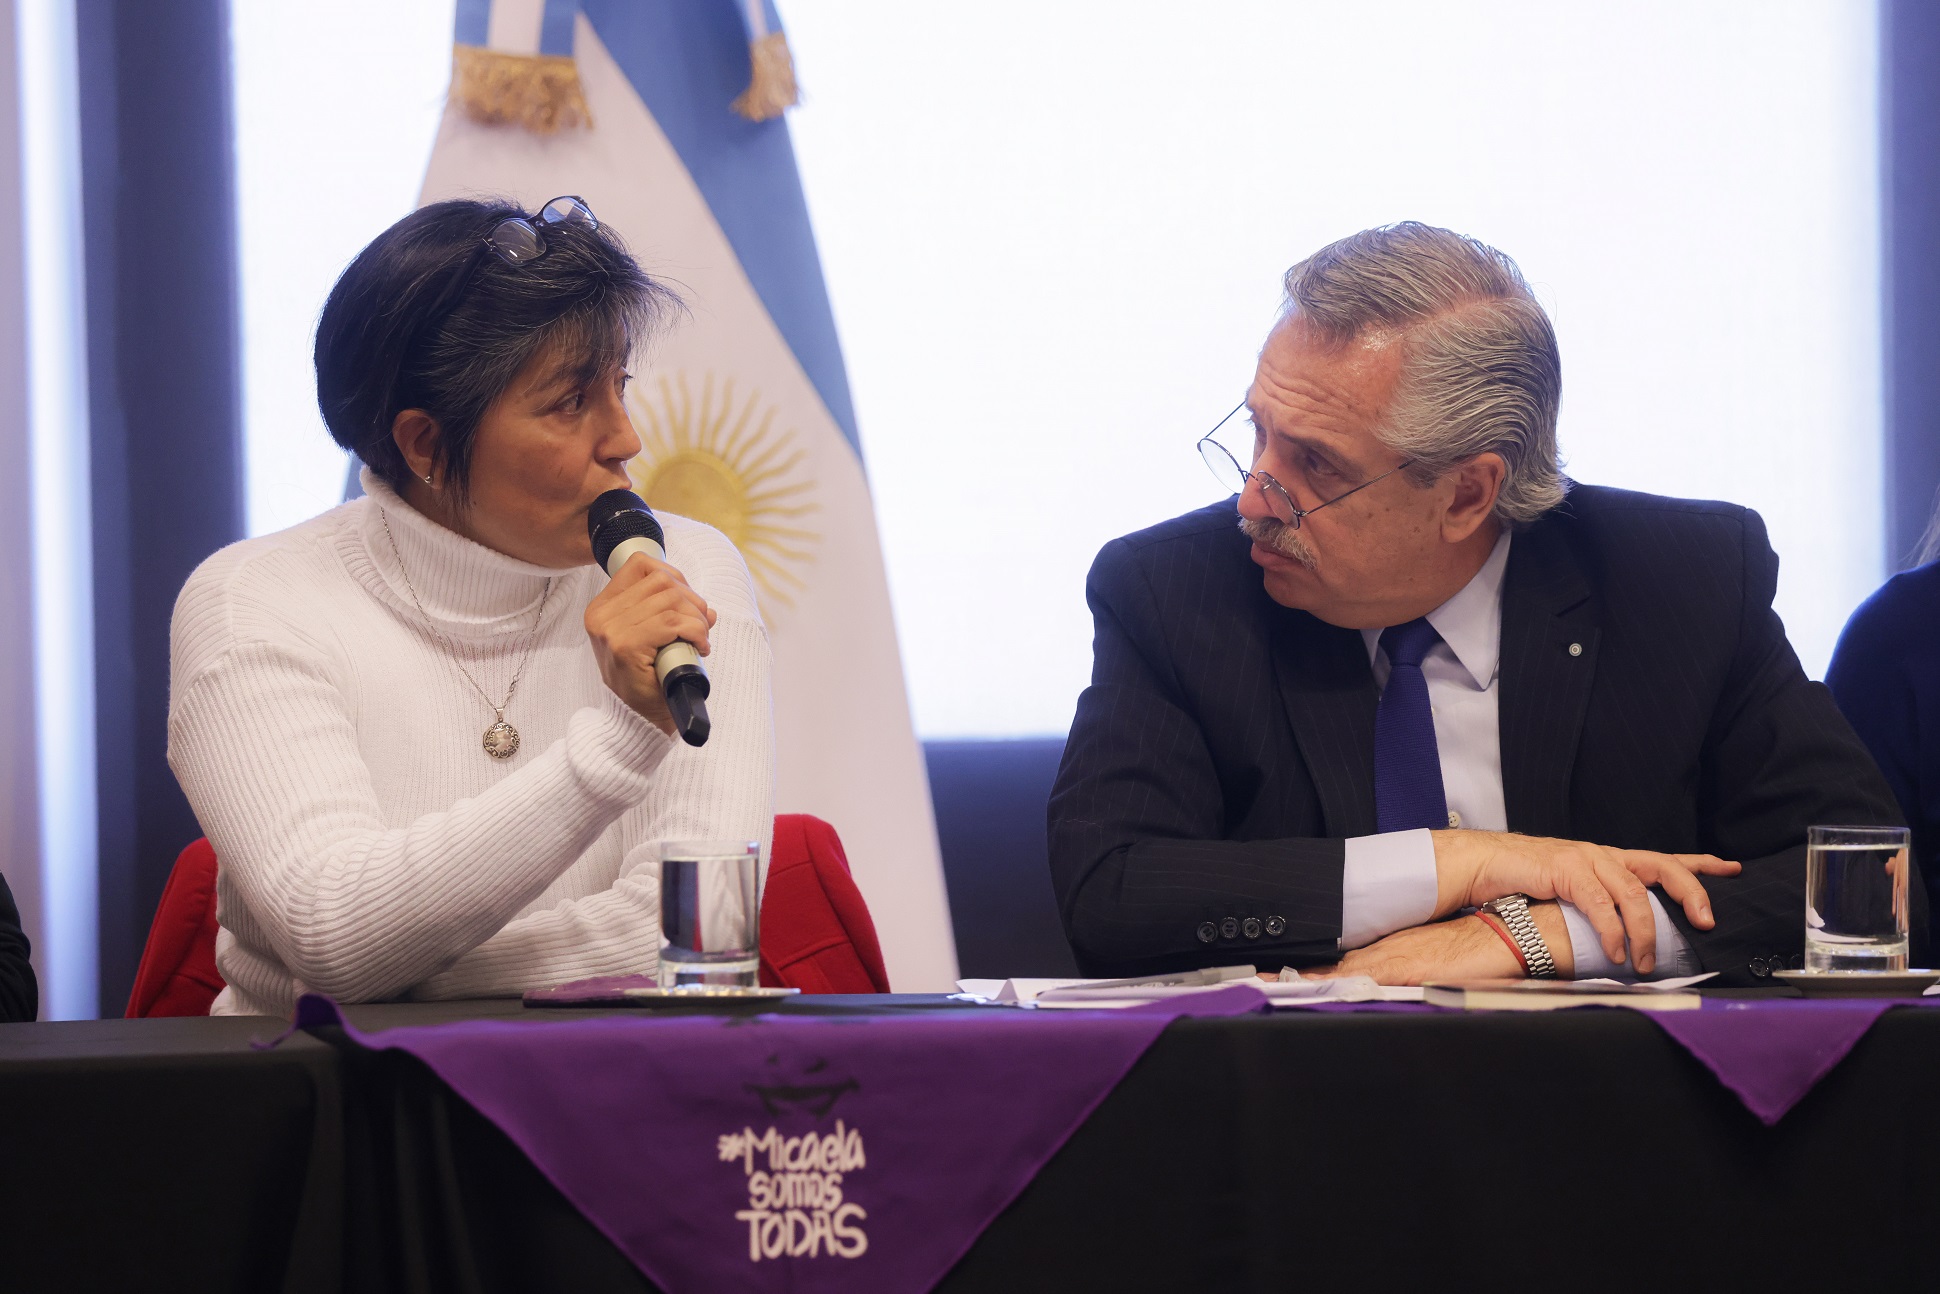 El presidente Alberto Fernández recibió a familiares de víctimas de femicidio